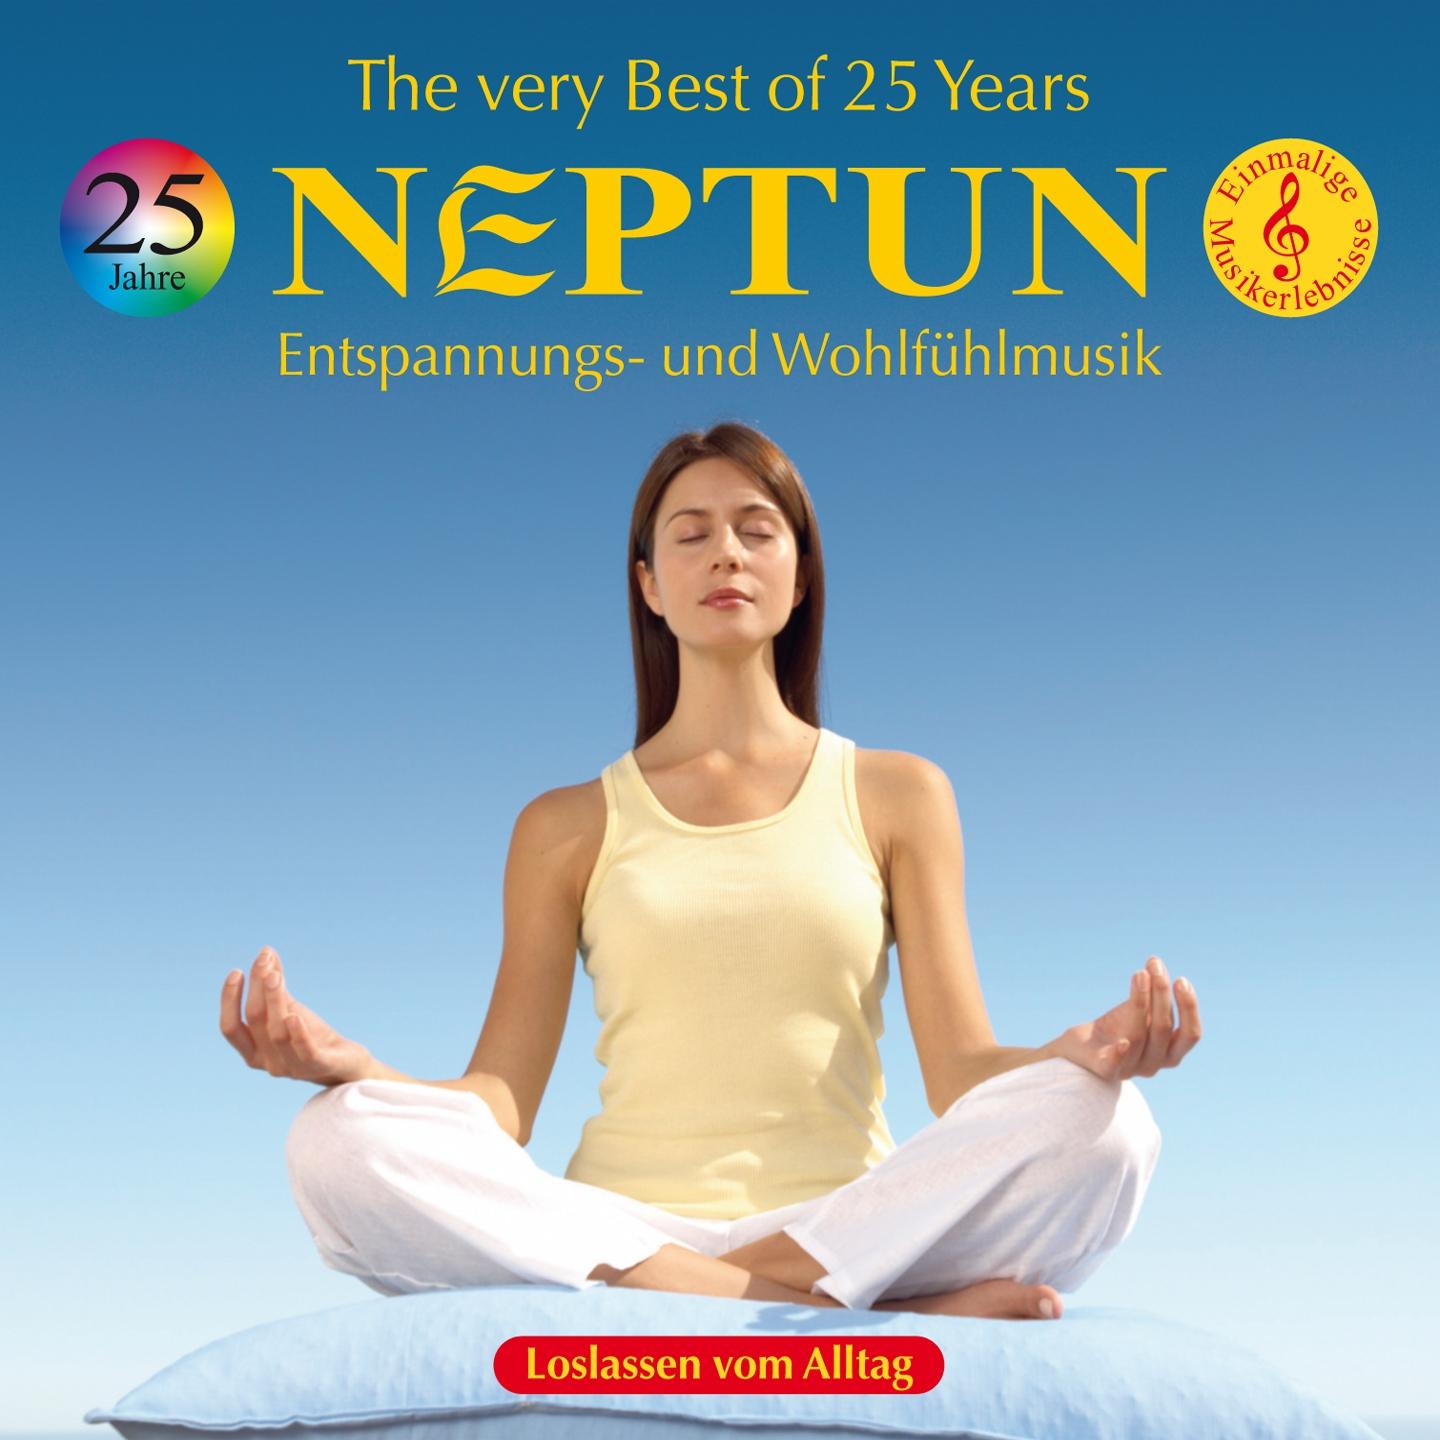 25 Years: The Very Best of NEPTUN专辑